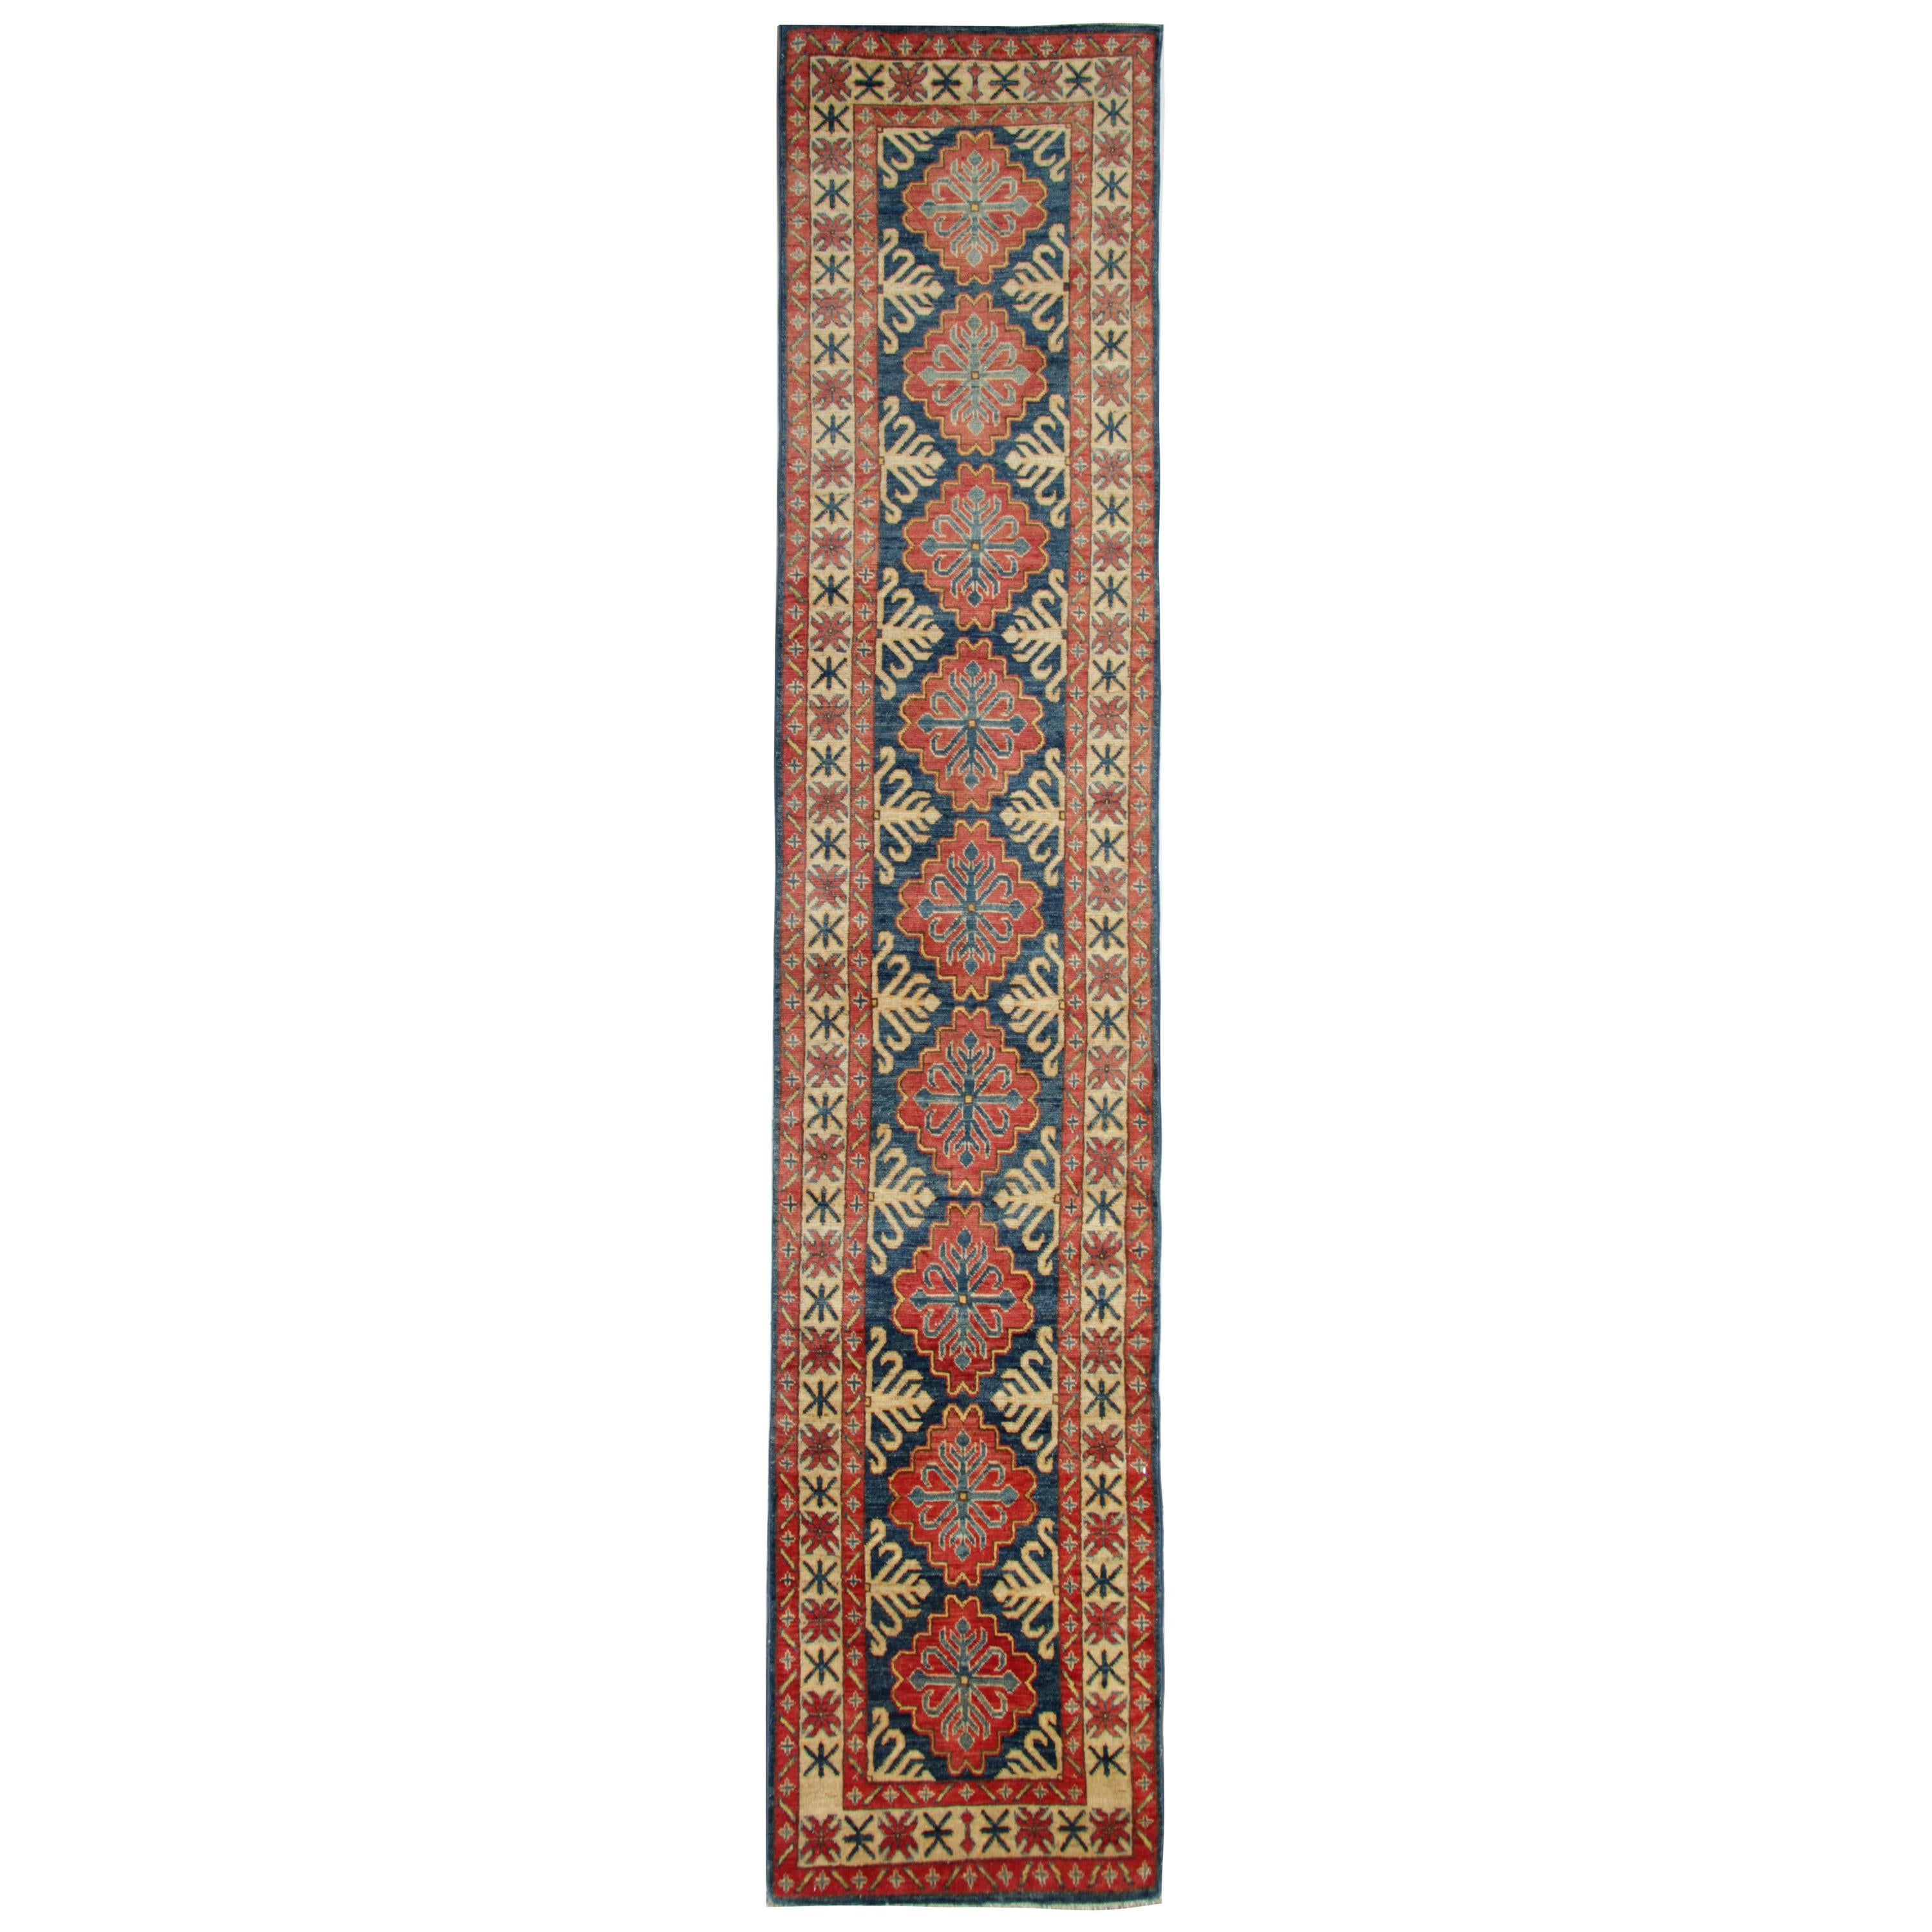 Handmade Runner Rug Blue and Red Medallion Rug Carpet Geometric Kazak Rug  For Sale